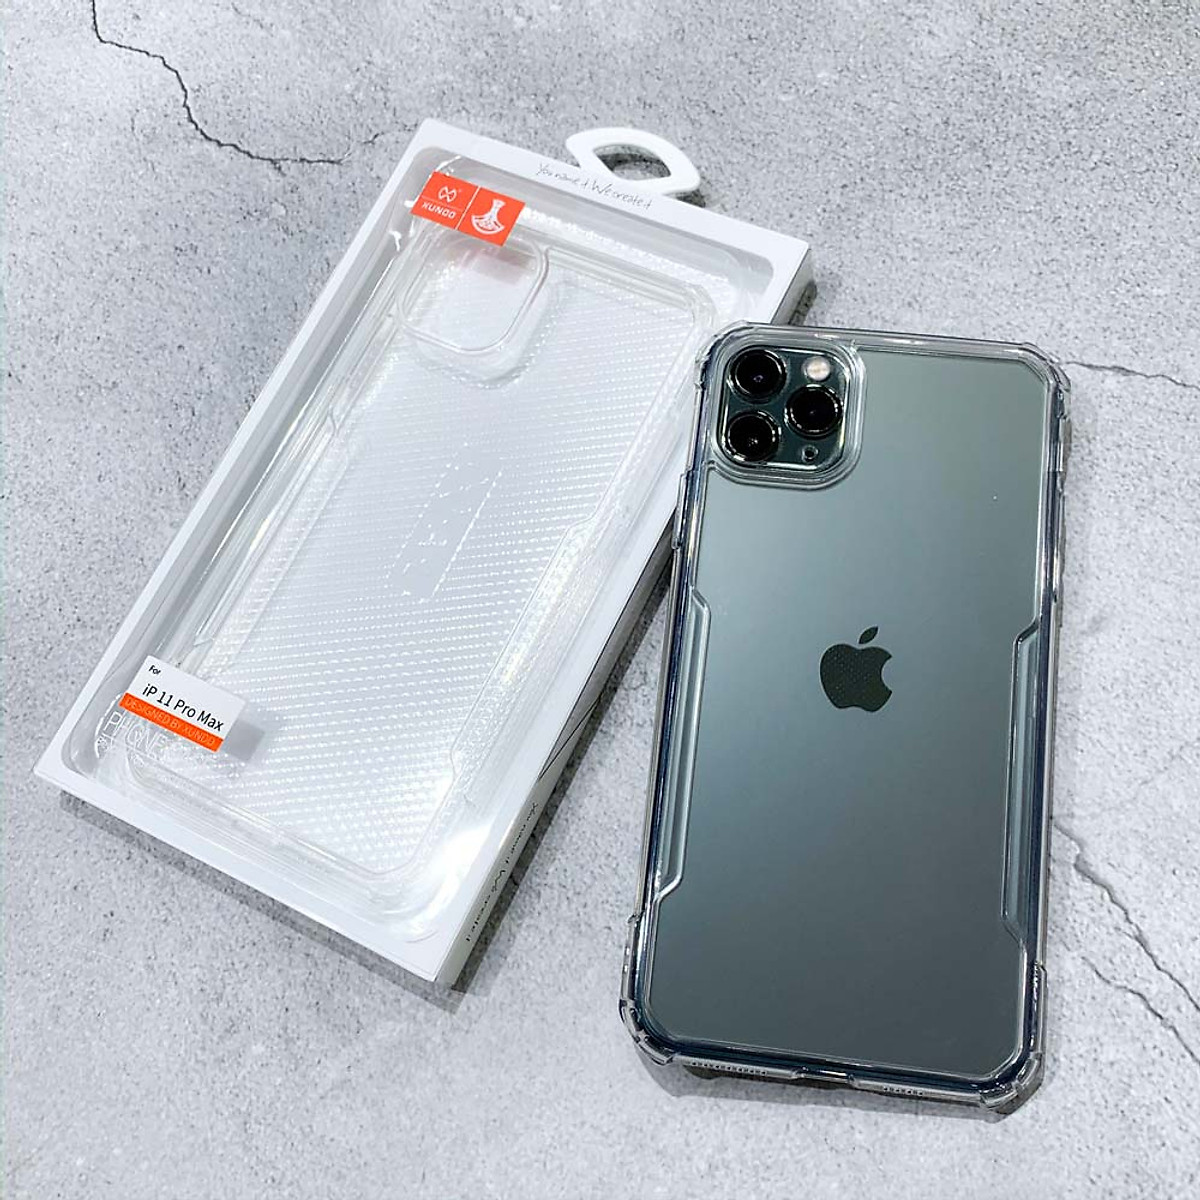 Ốp lưng chống sốc SGS cao cấp Xundd cho các dòng iPhone 11 -  iPhone 11 Pro - iPhone 11 Pro Max - Hàng Nhập Khẩu